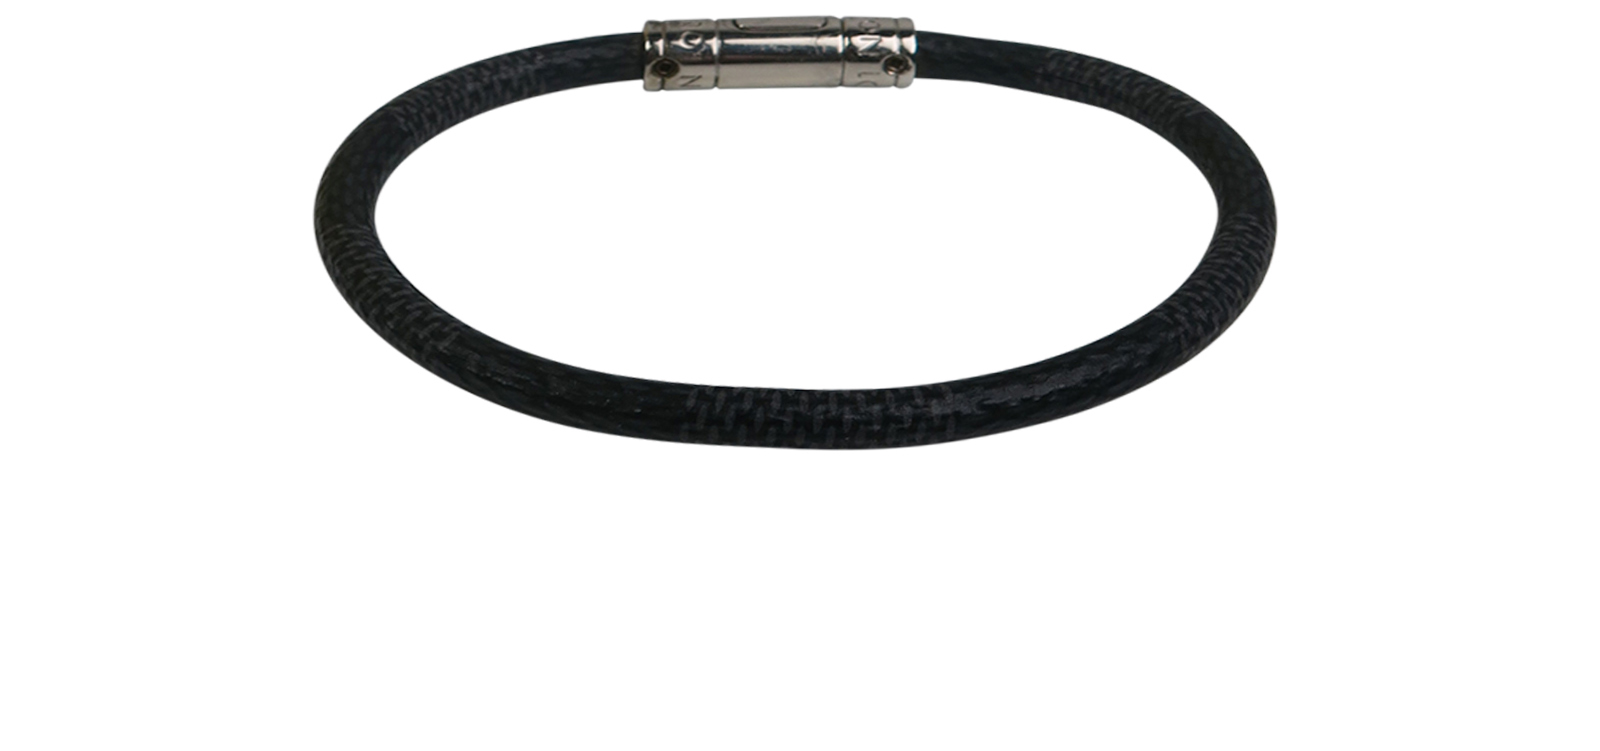 Louis Vuitton Keep It Bracelet, Black, 21cm